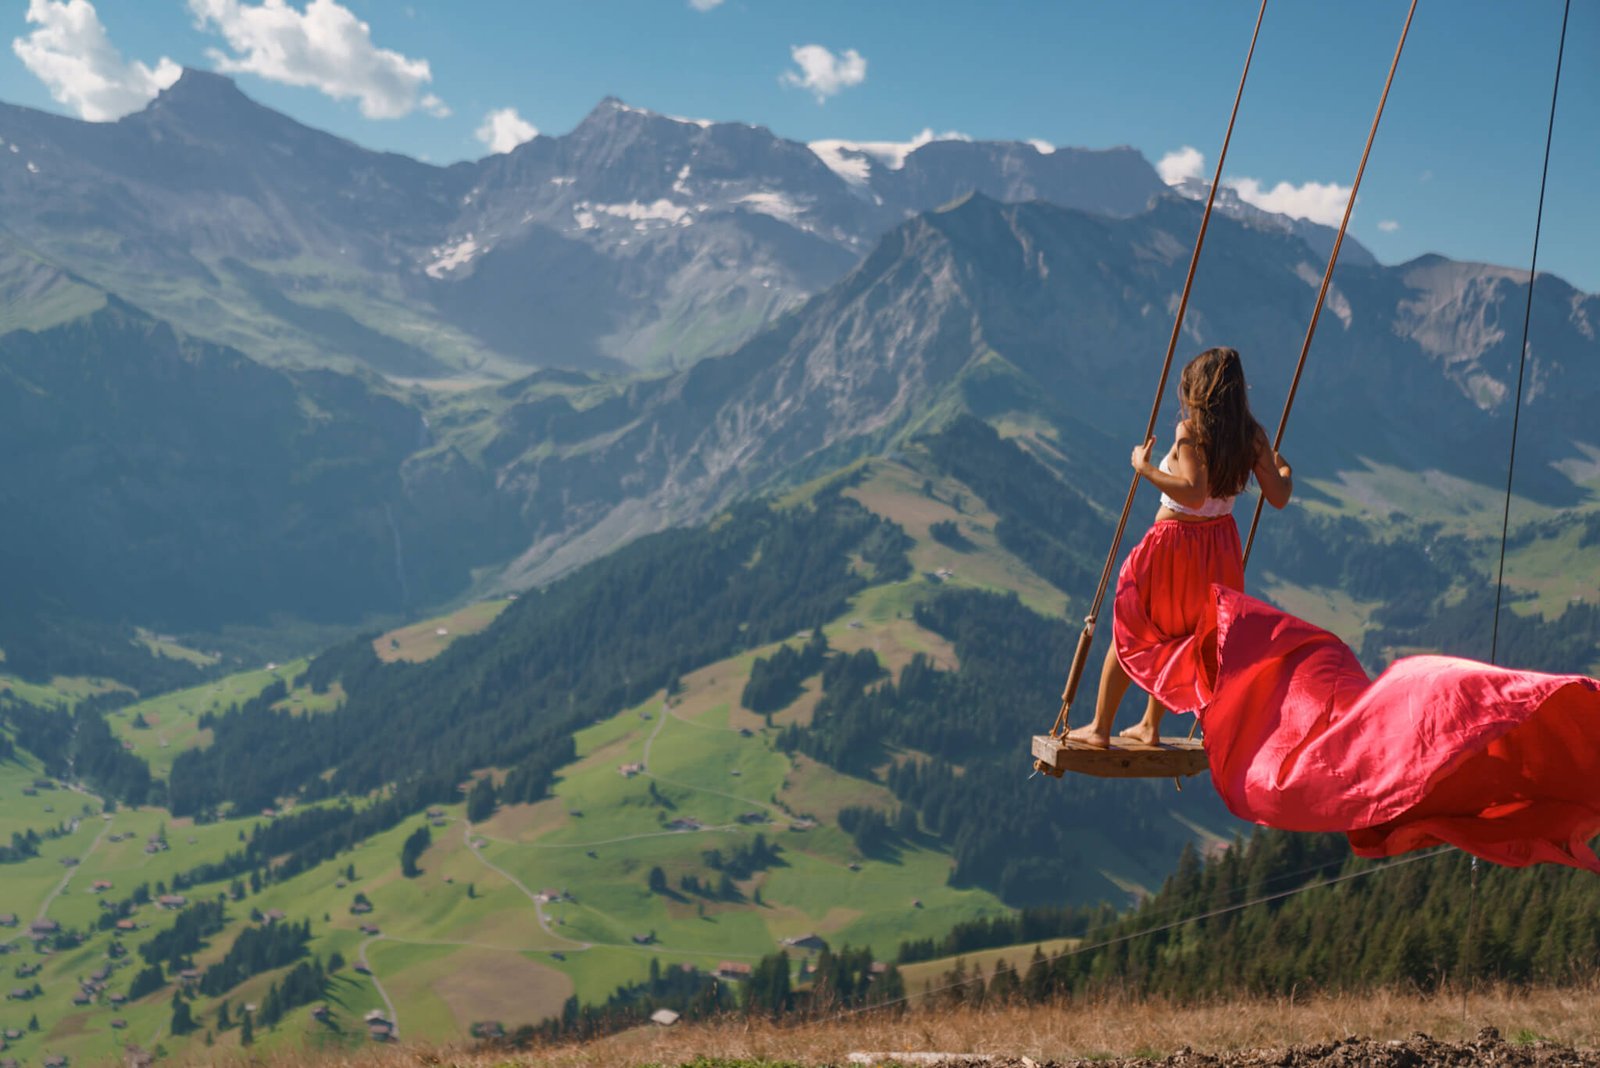 Danni on a swing in Switzerland